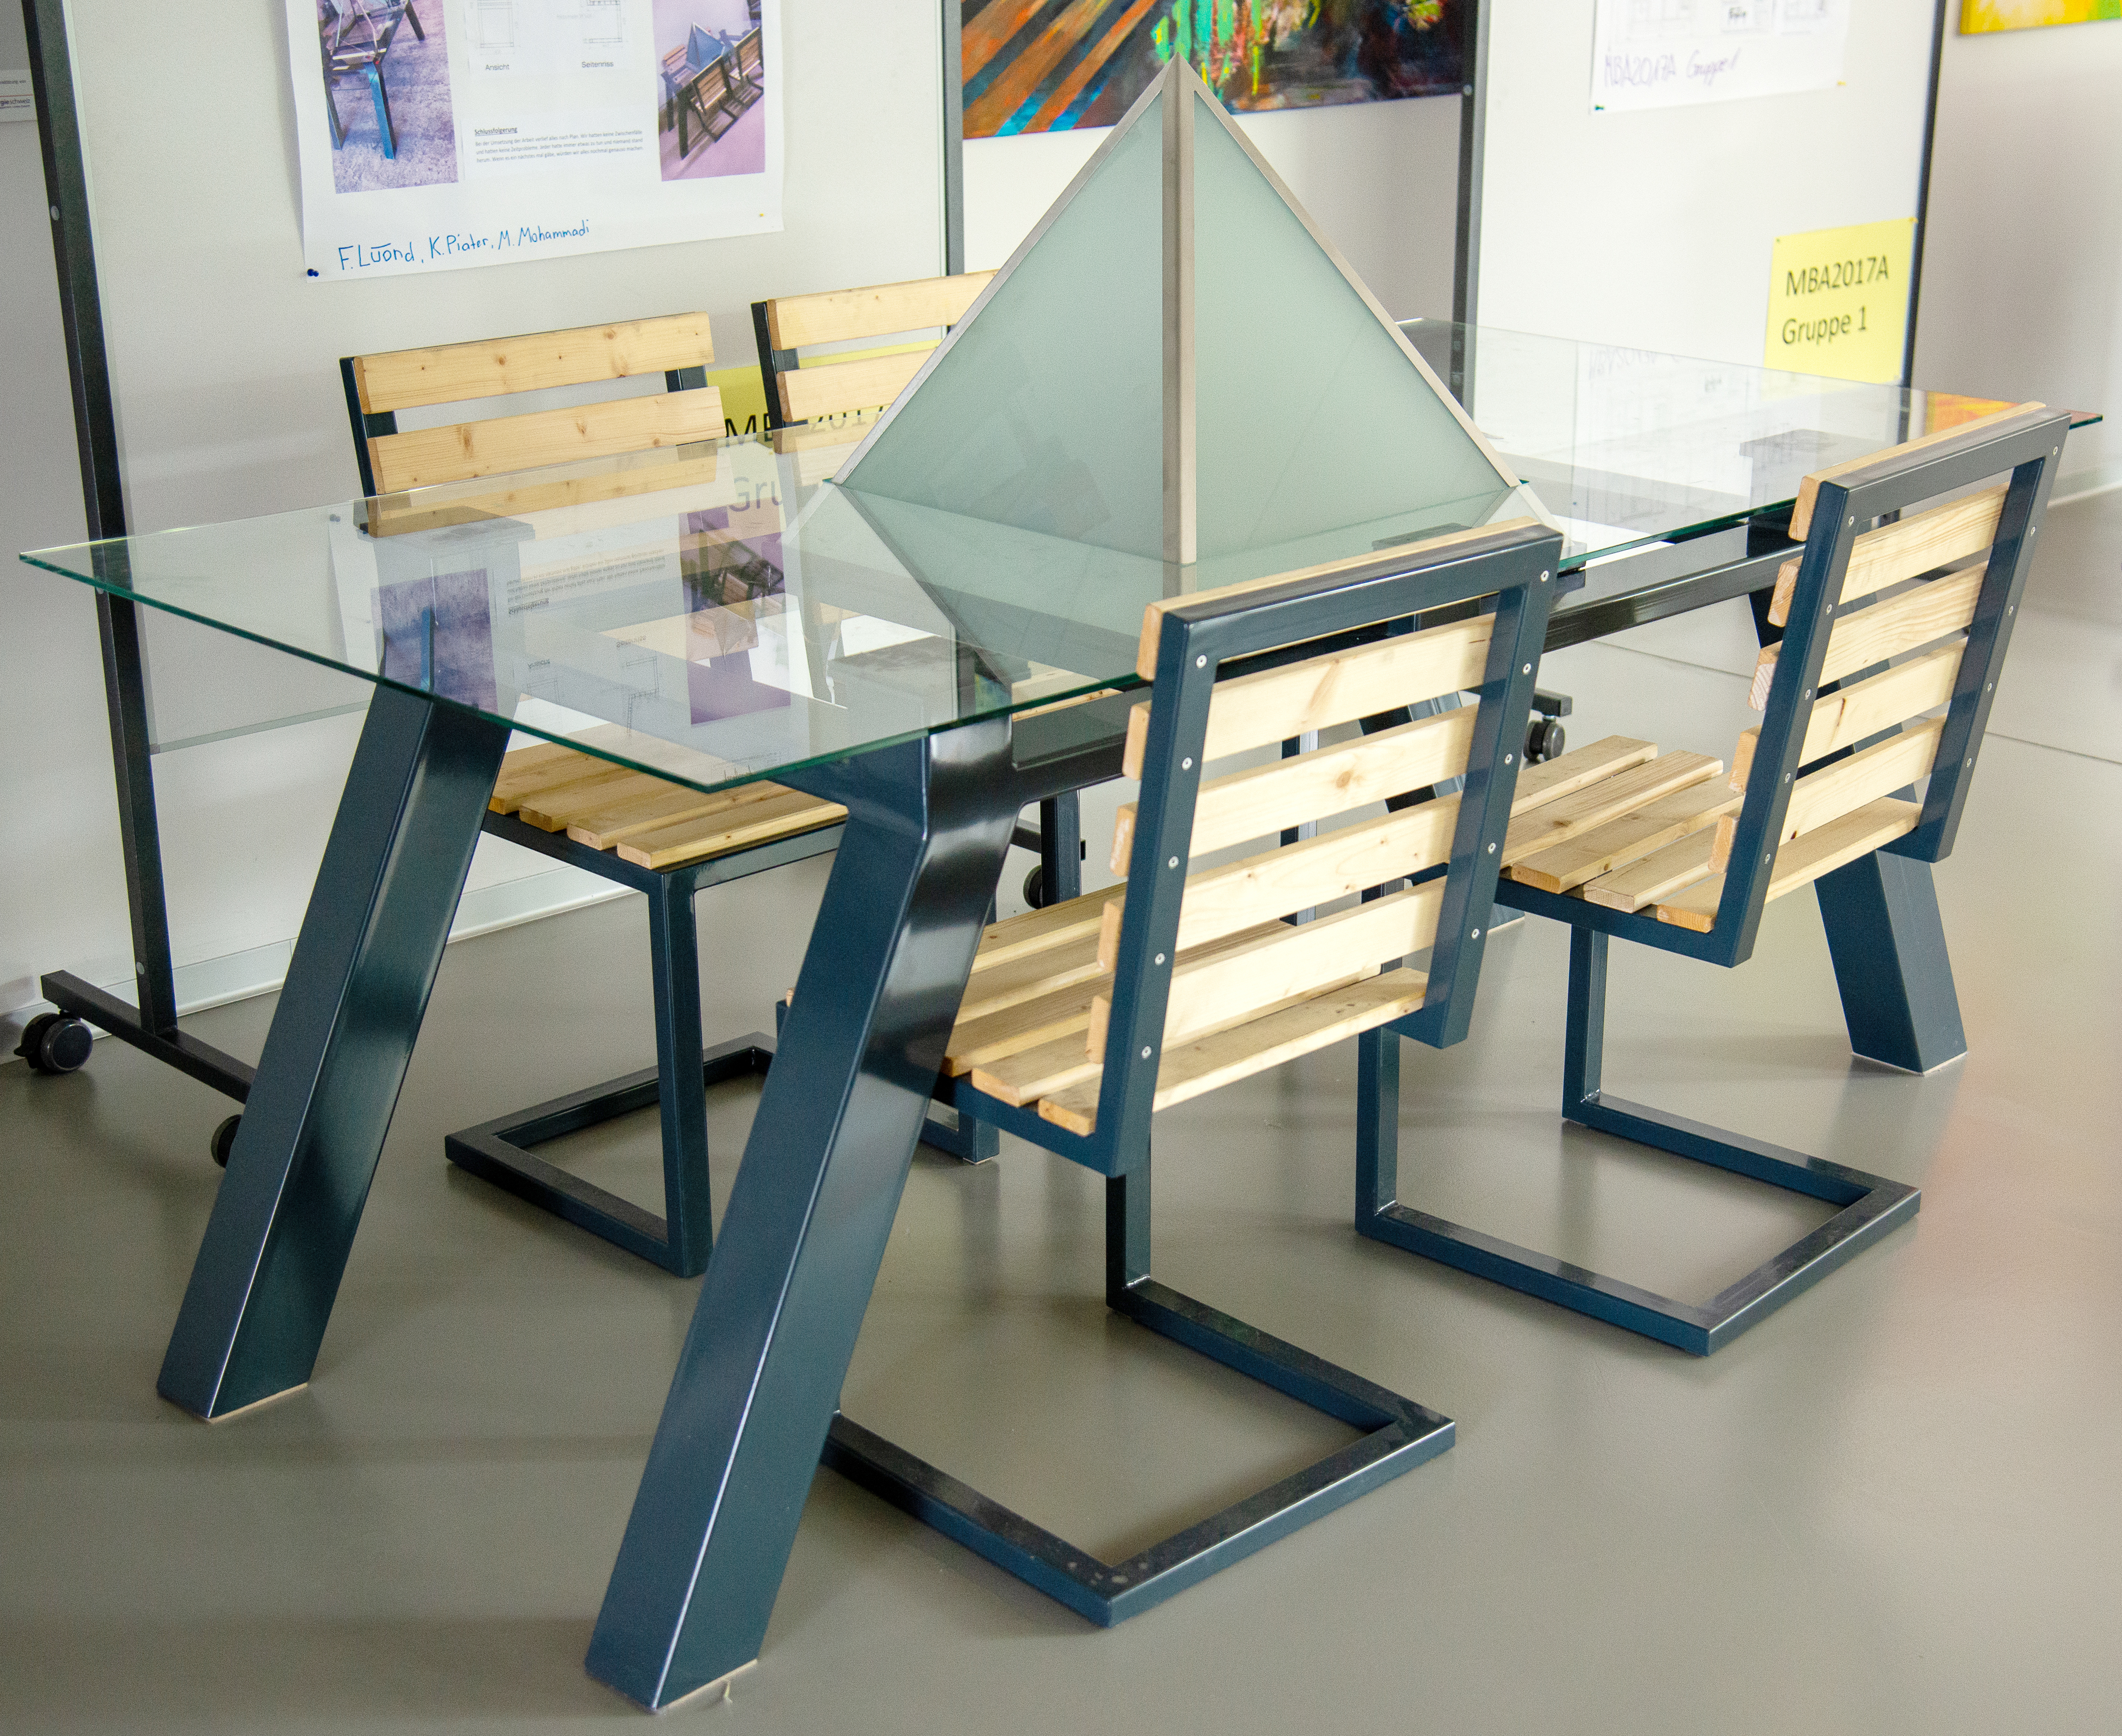 Tisch mit spannendem Materialmix. Projekt von Mostafa Mohammadi, Fabian Lüönd und Kevin Piater.